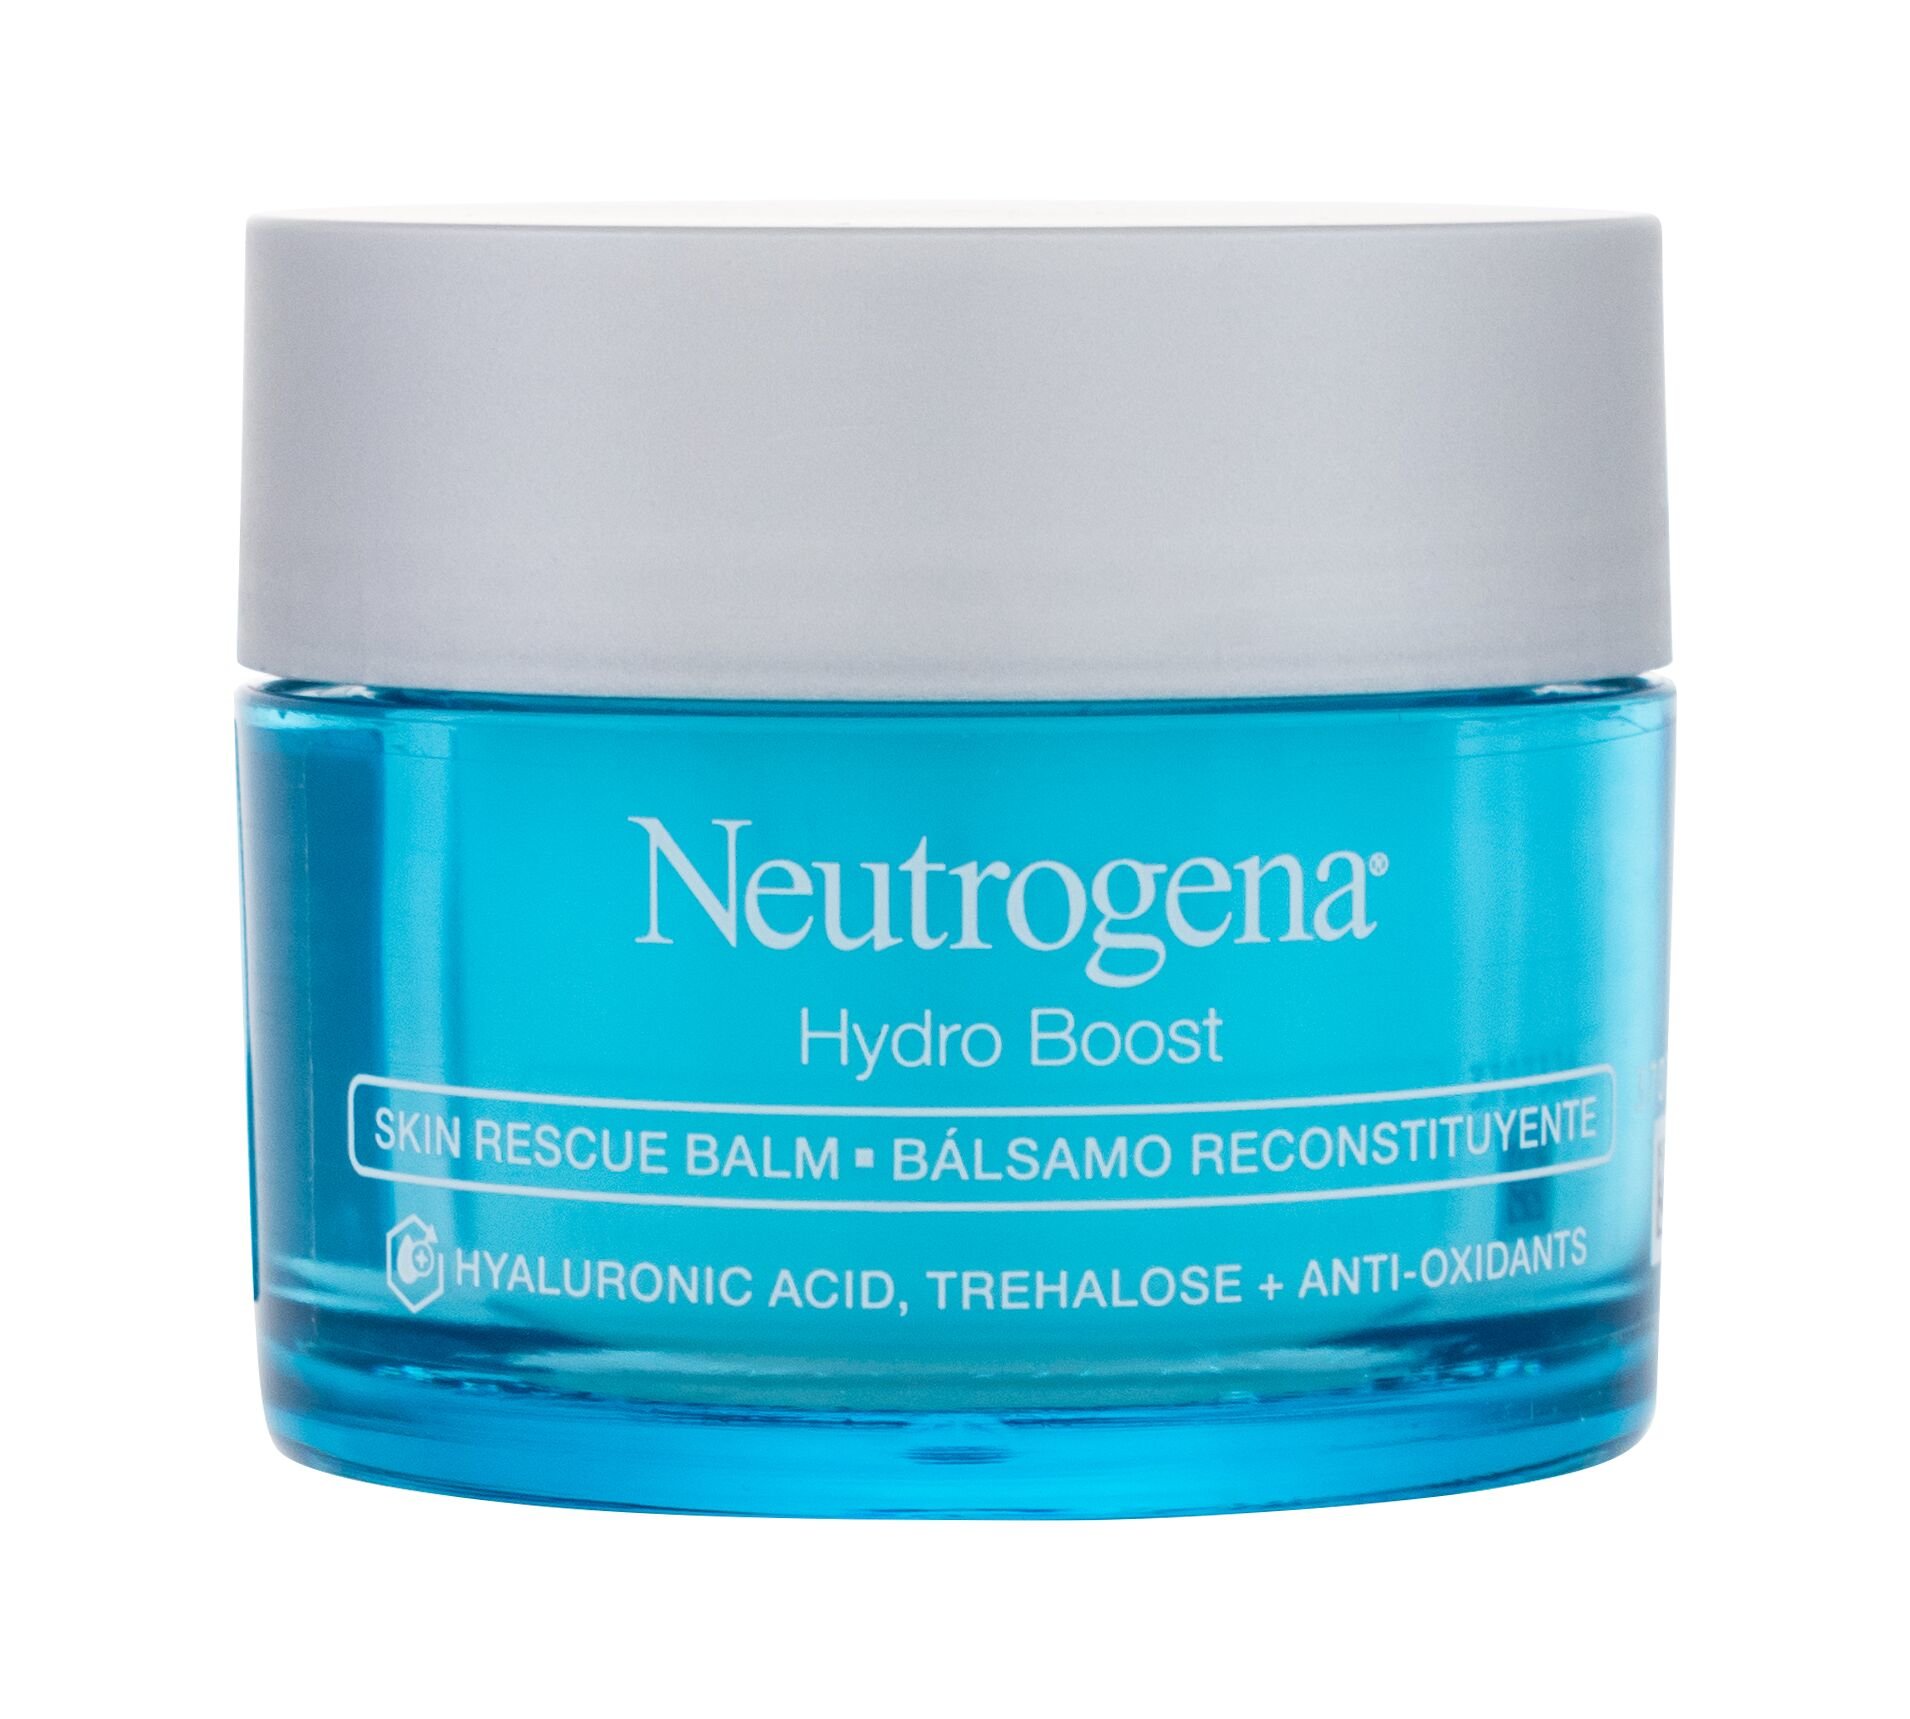 Neutrogena Hydro Boost Skin Rescue Balm 50ml veido gelis